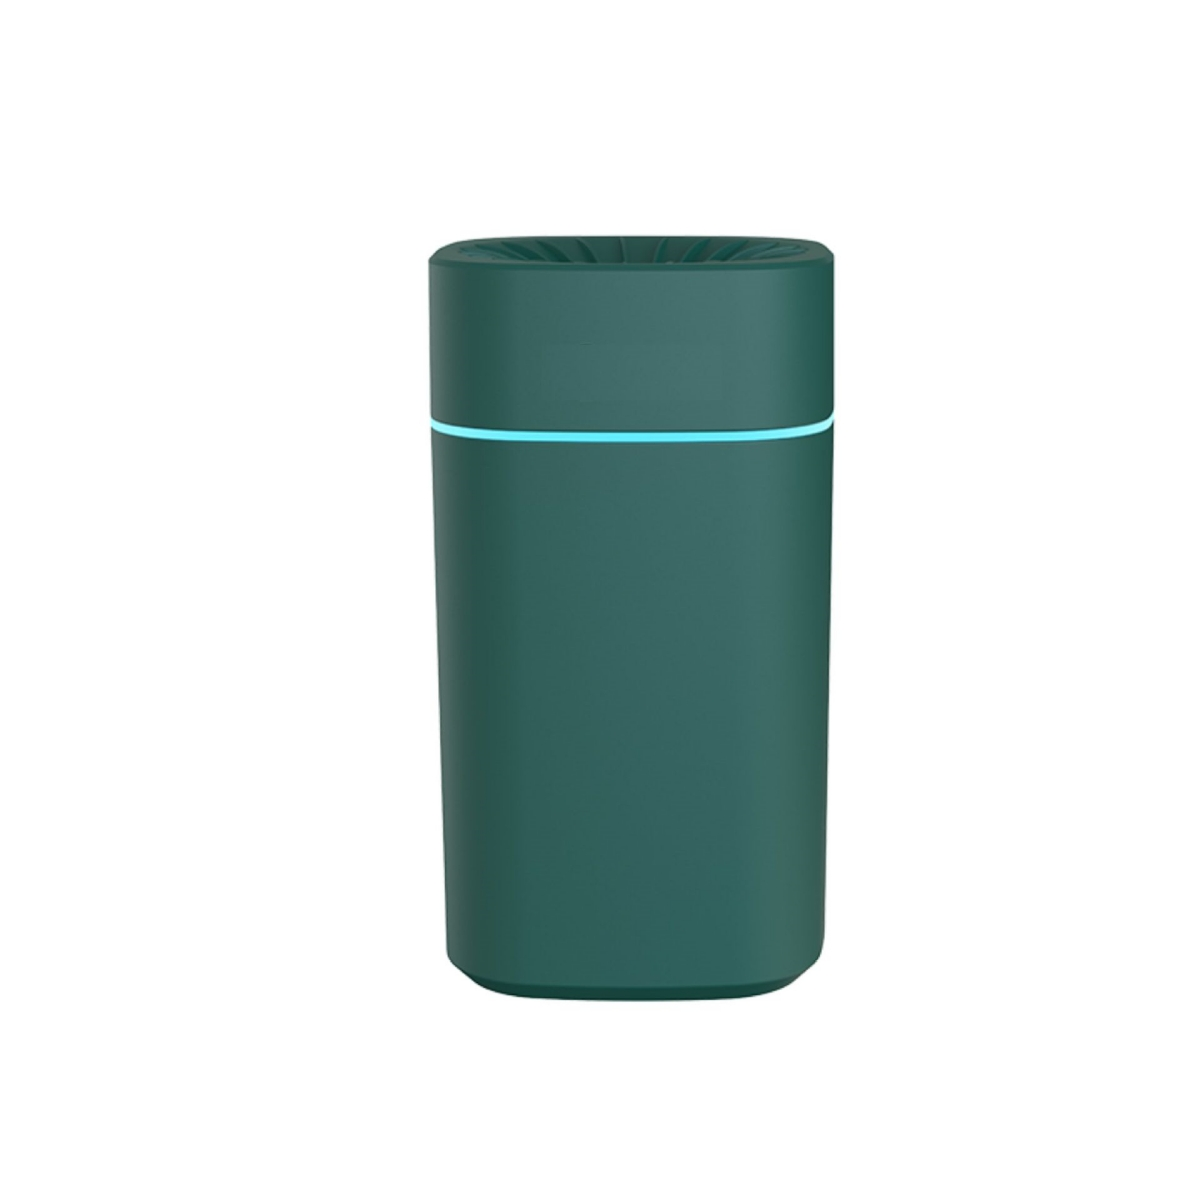 SHAOKE Magischer Luftbefeuchter: (Raumgröße: 30 Stimmungslicht, Kompakt Luftbefeuchter Aromatherapie, m²) Grün